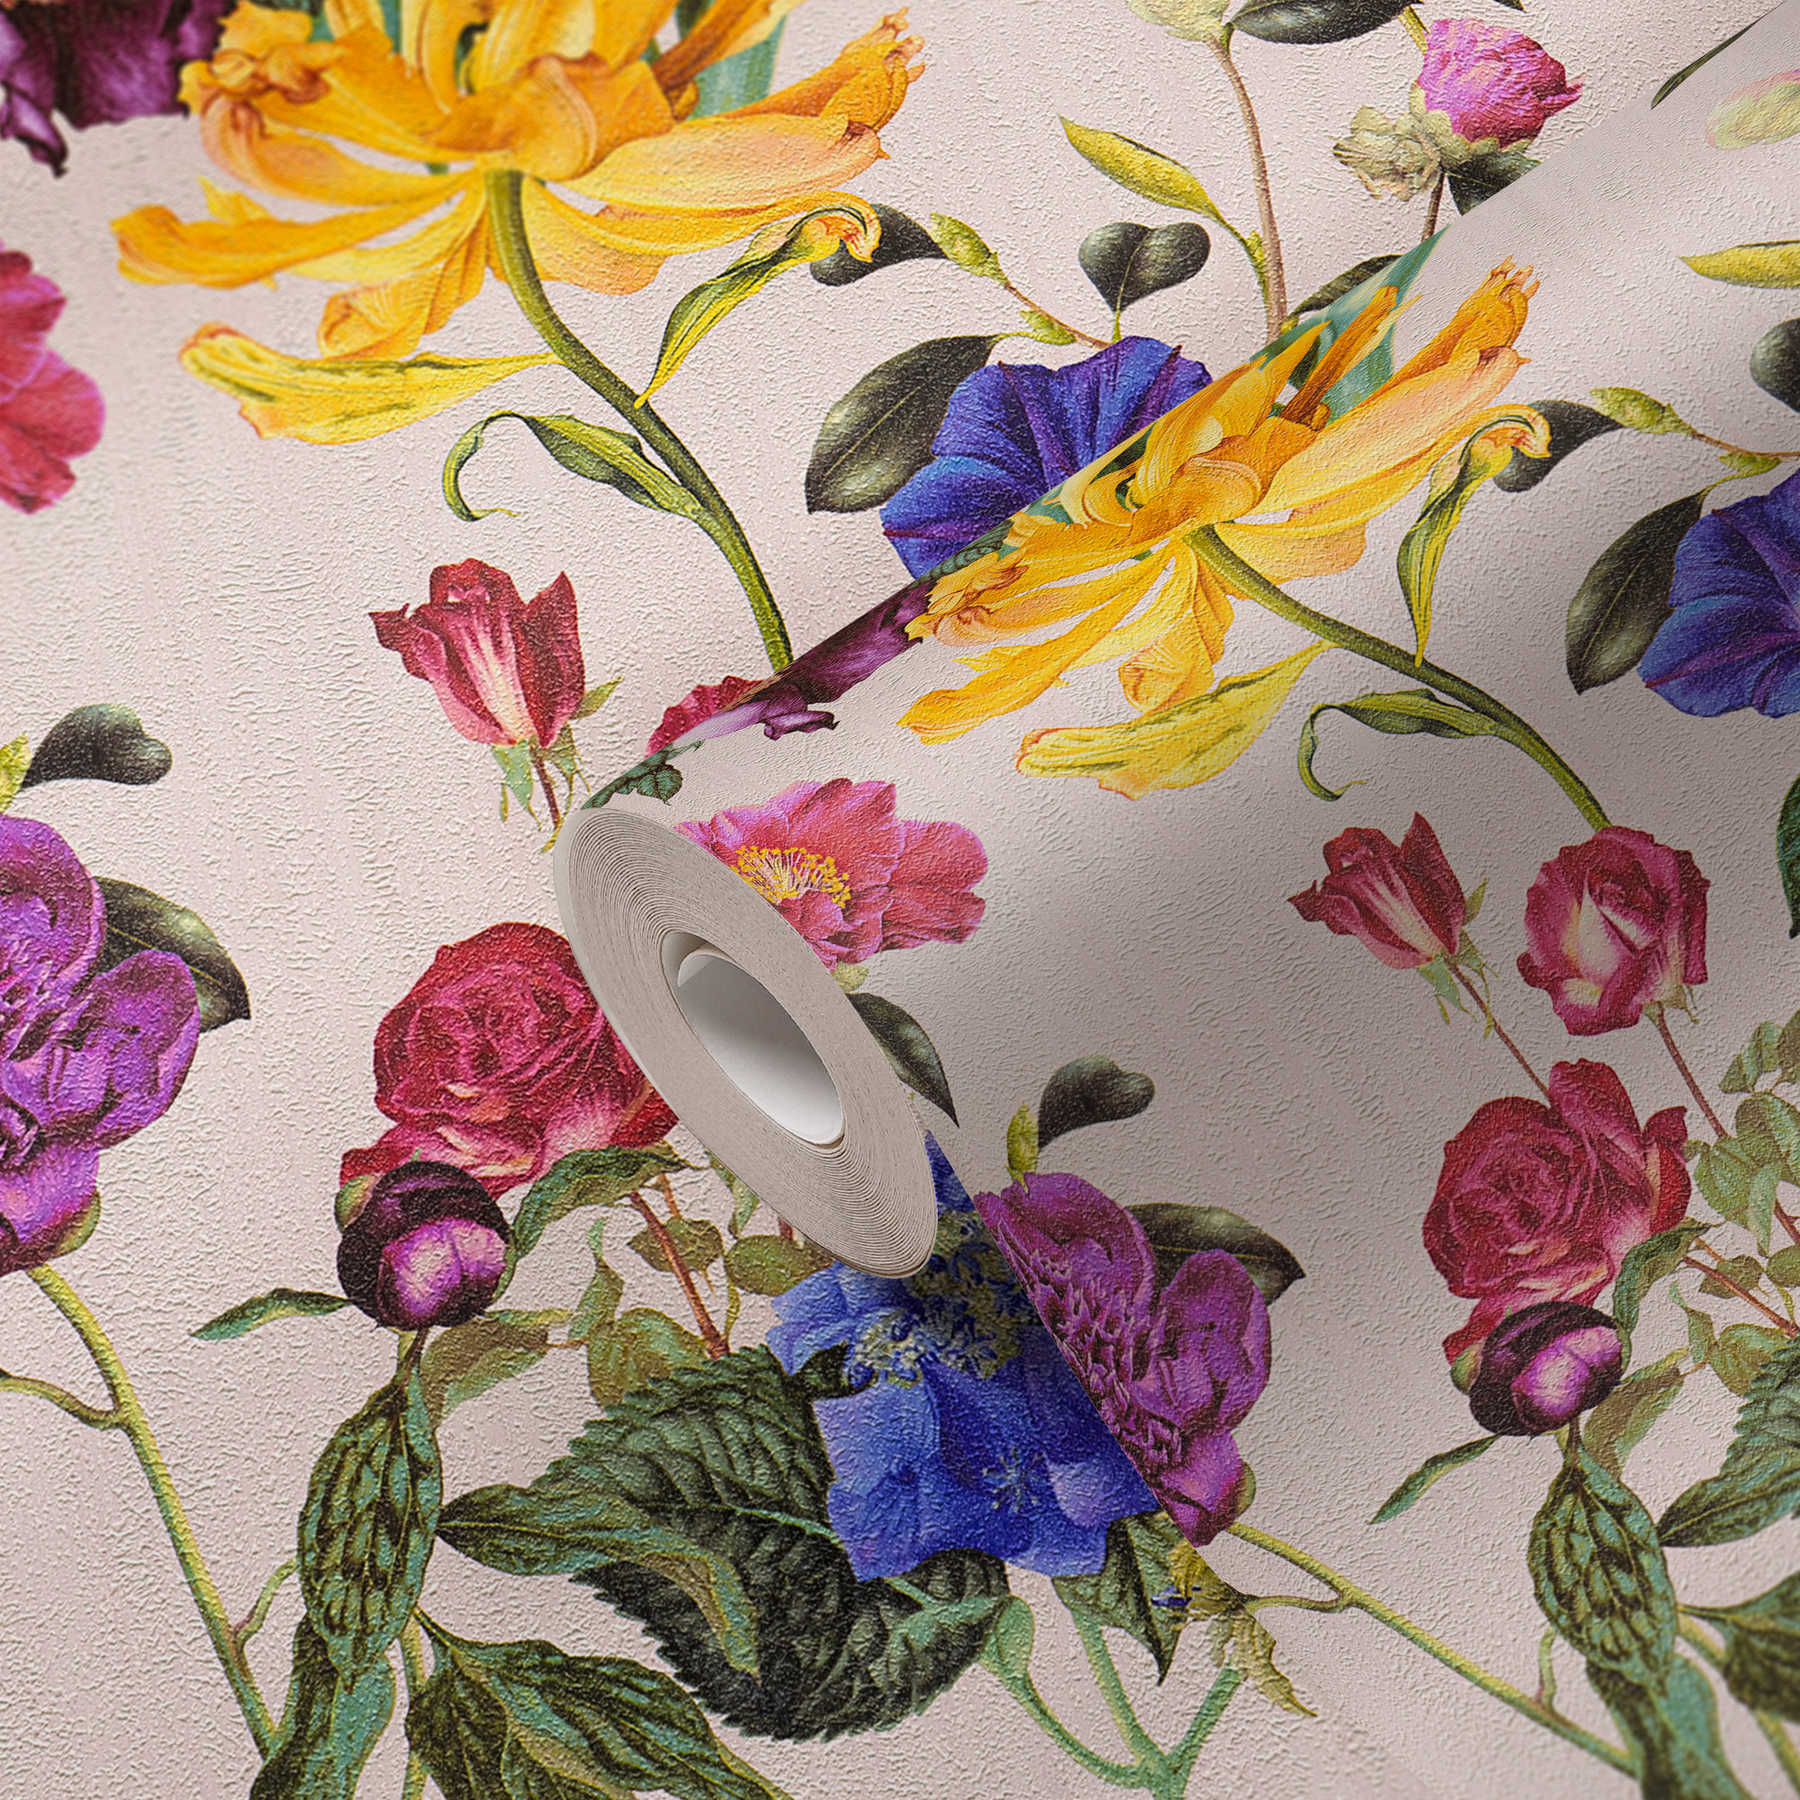             Bloesembehang met bloemen in felle kleuren - kleurrijk, groen, roze
        